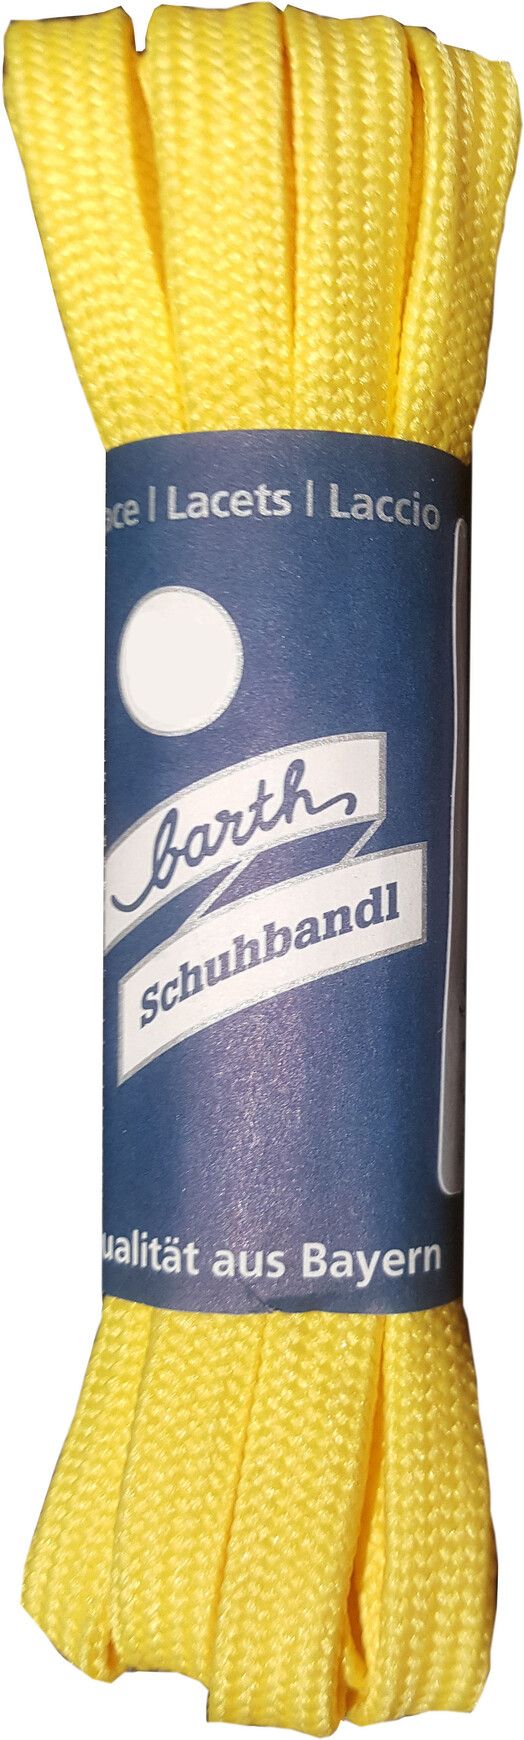 Barth Schuhbandl Schn&#x00FC;rsenkel&#x20;Mode&#x20;flach&#x20;gelb